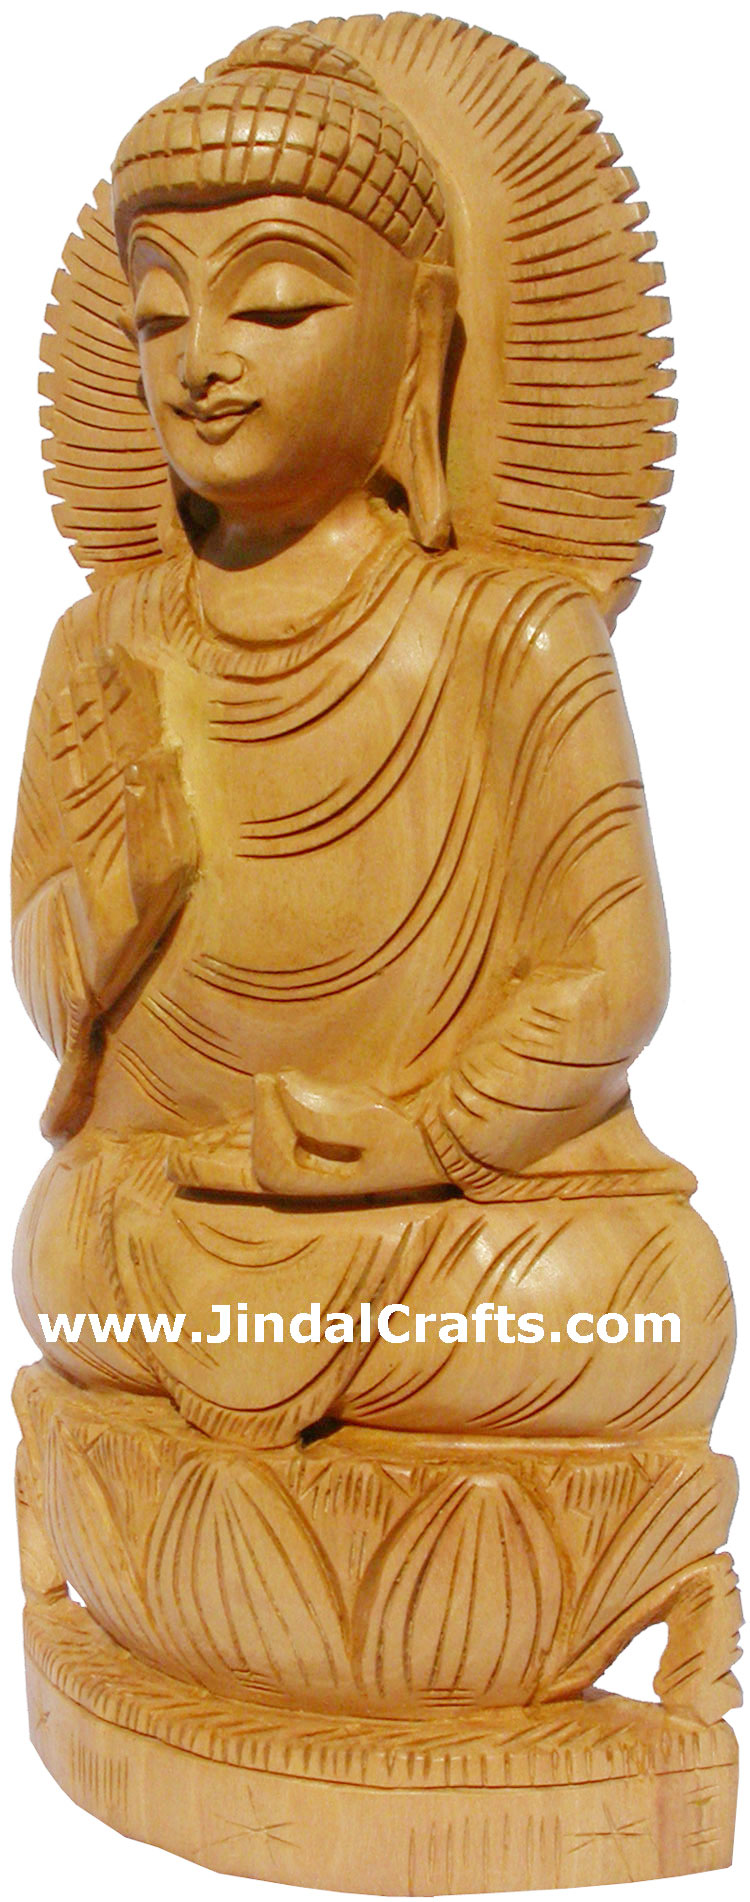 Handmade Sculpture Buddha Figurine India Hand Work Art Buddhism Handicraft Murti